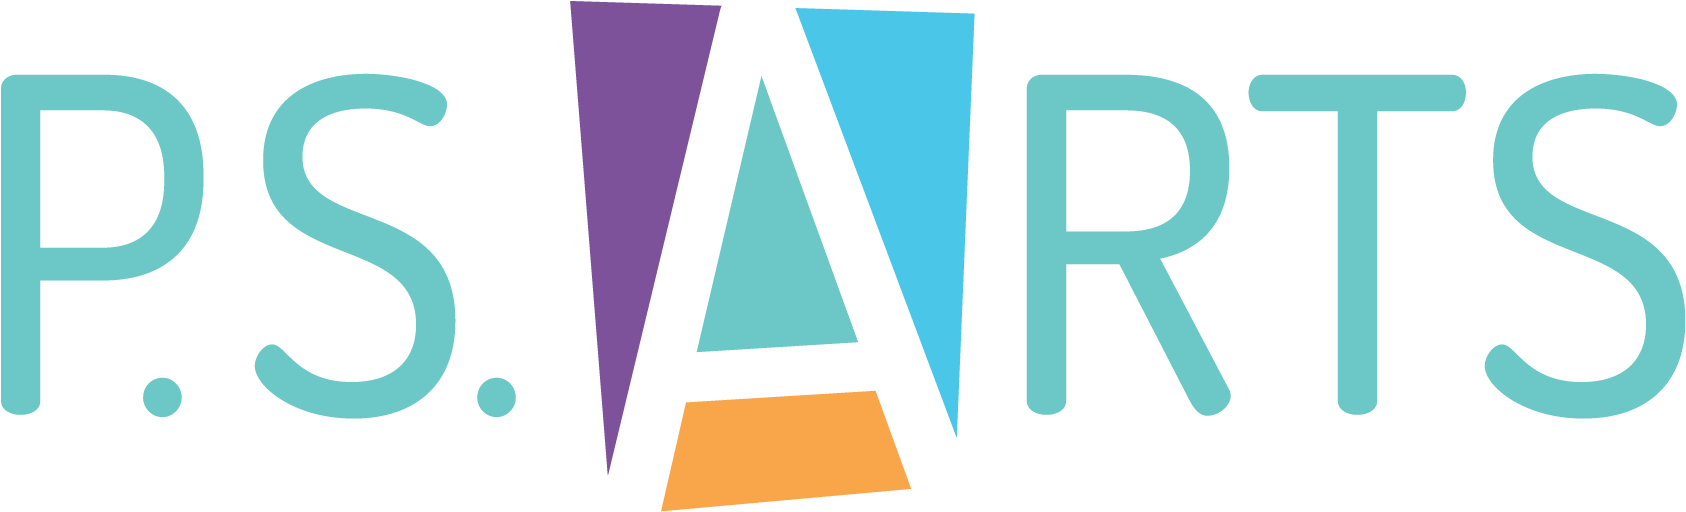 Ps Arts Logo (1800x600), Png Download